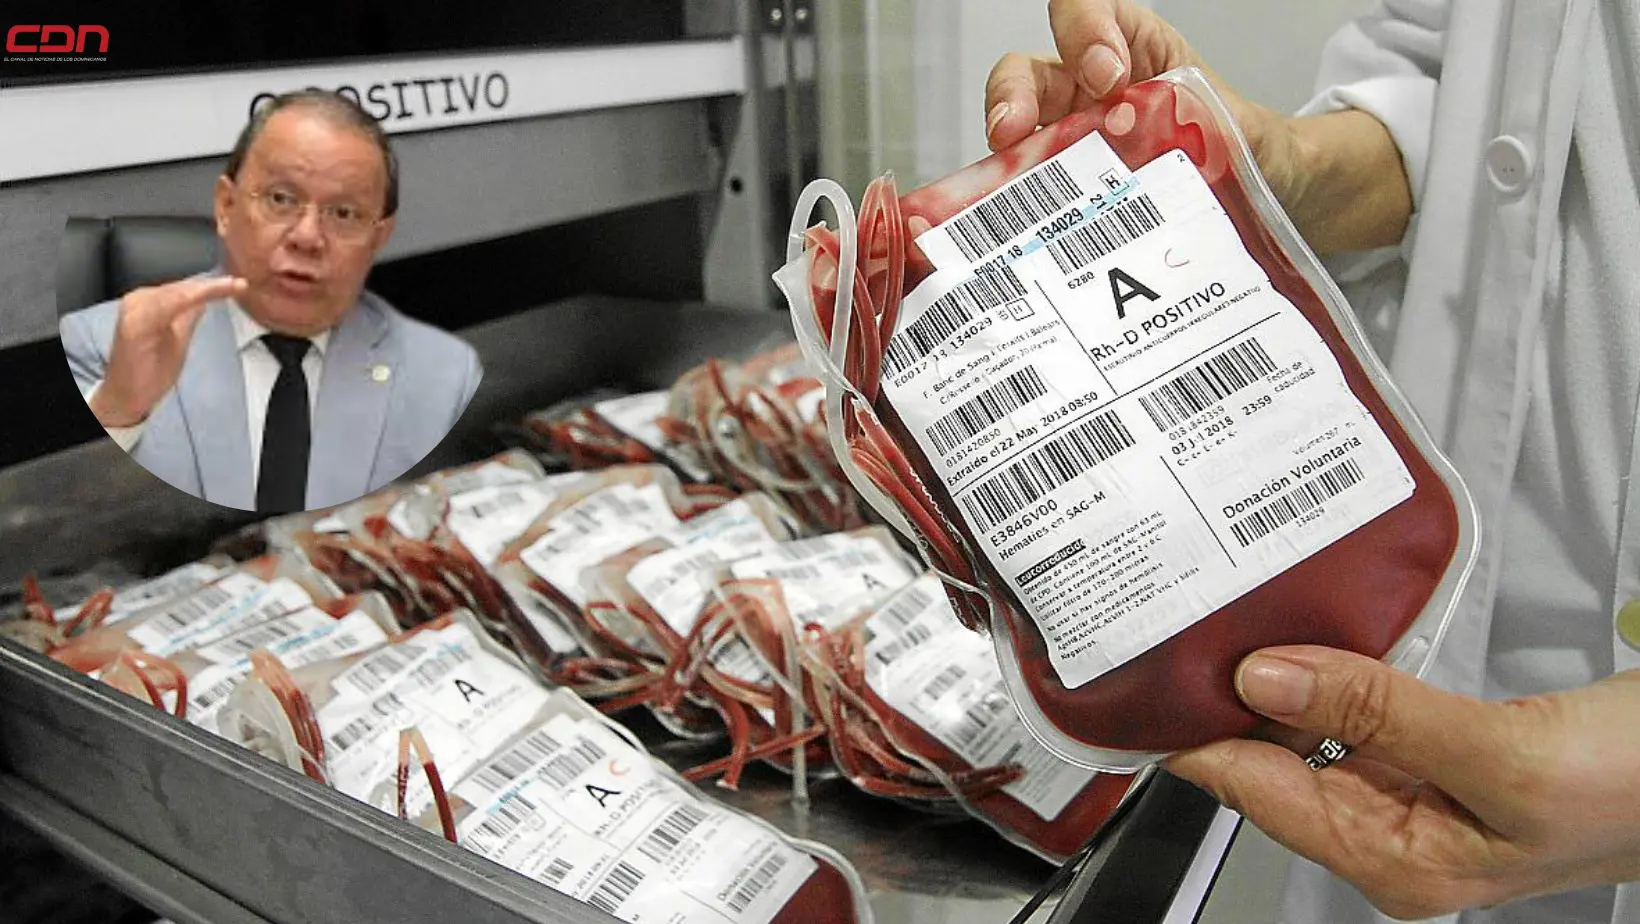 Director de Homocentro Nacional, Pedro Sing, indica, no hay cultura de donación de sangre. (foto, CDN)